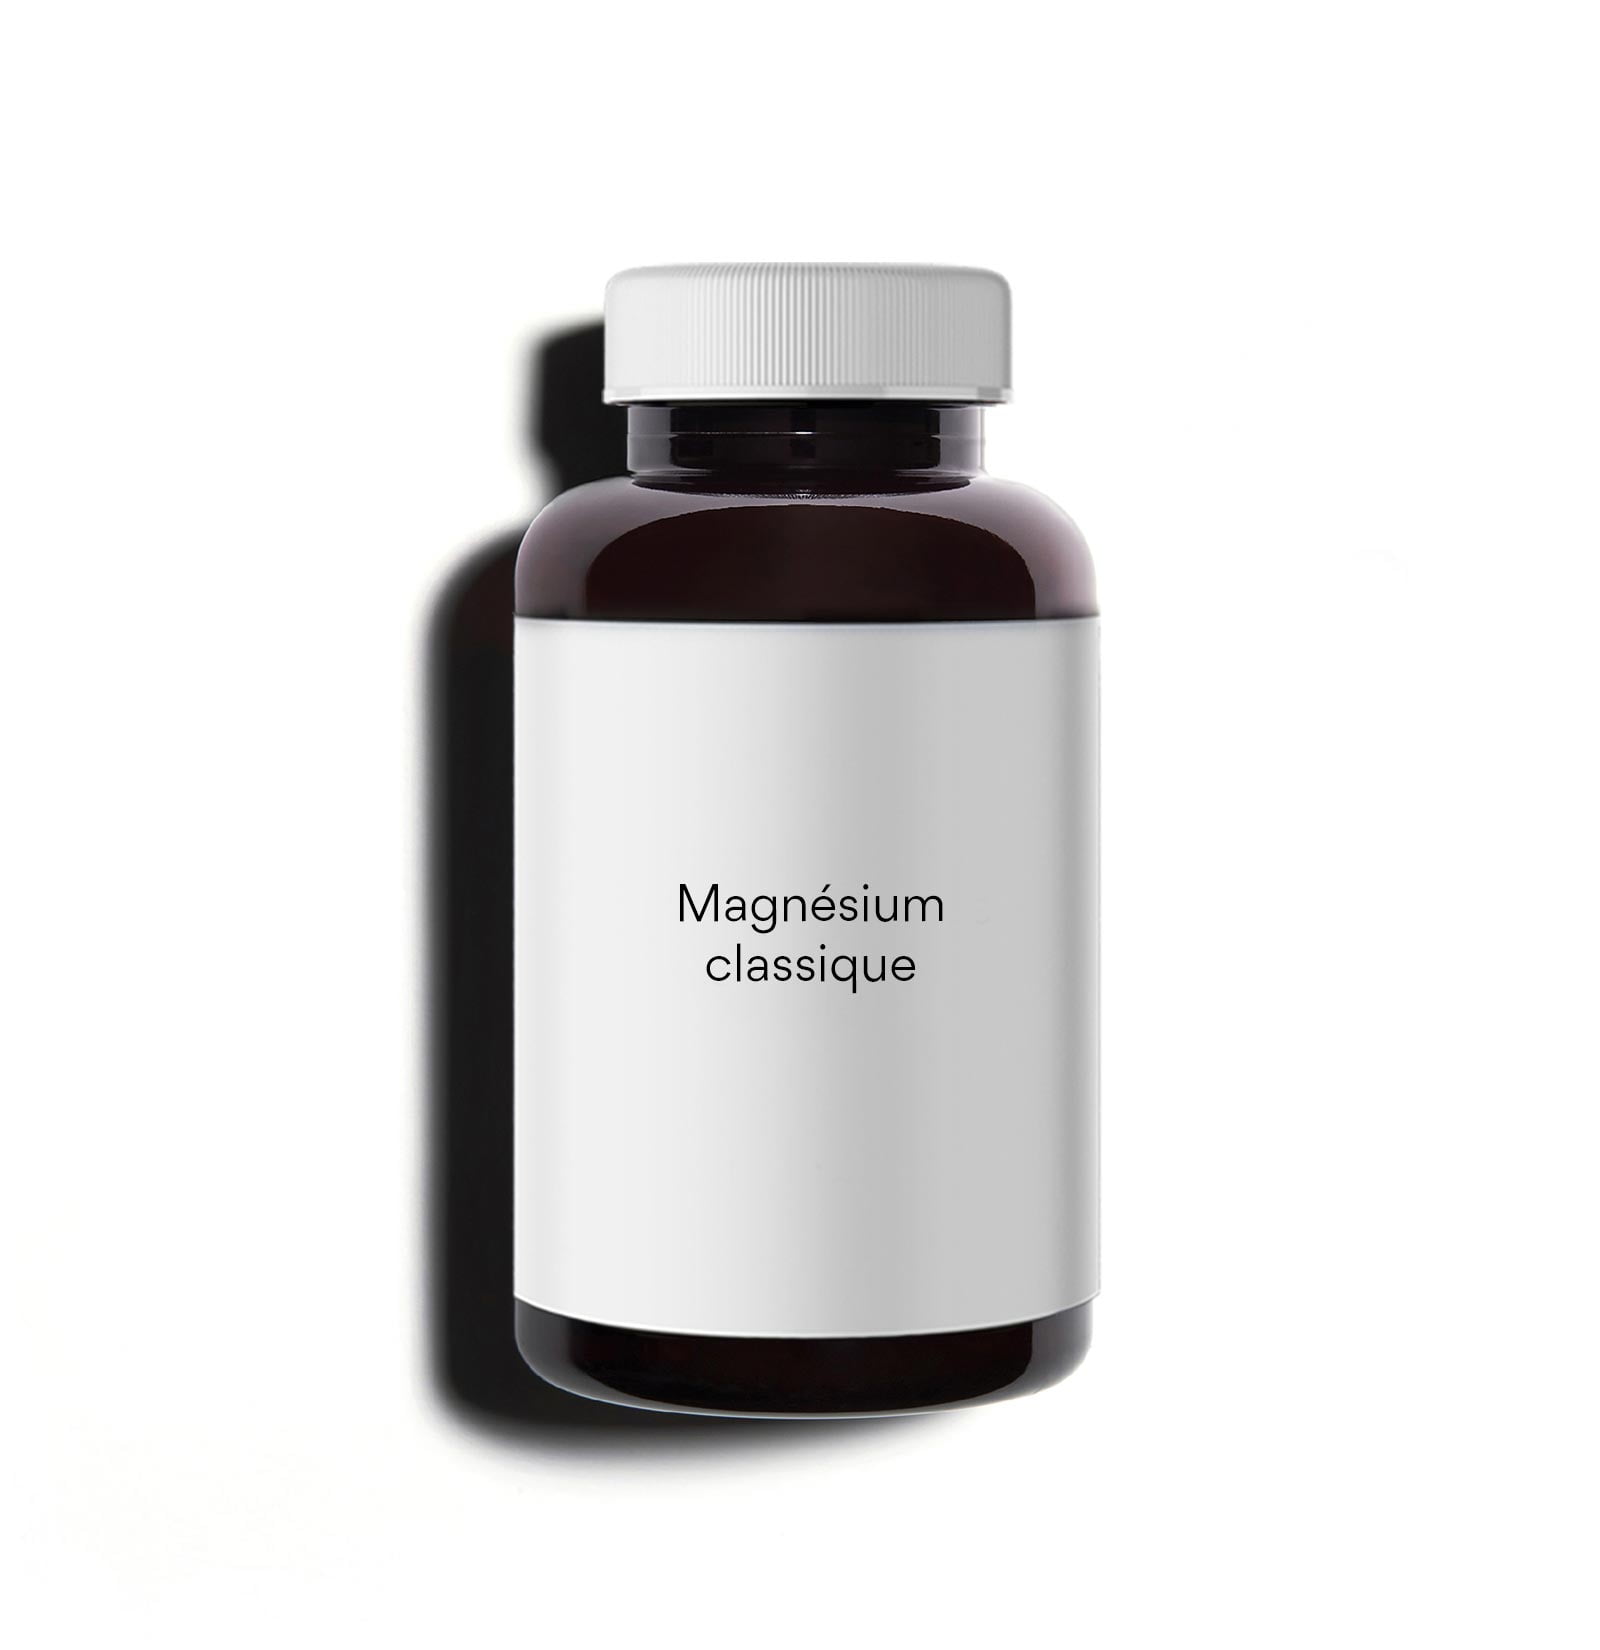 Magnésium classique